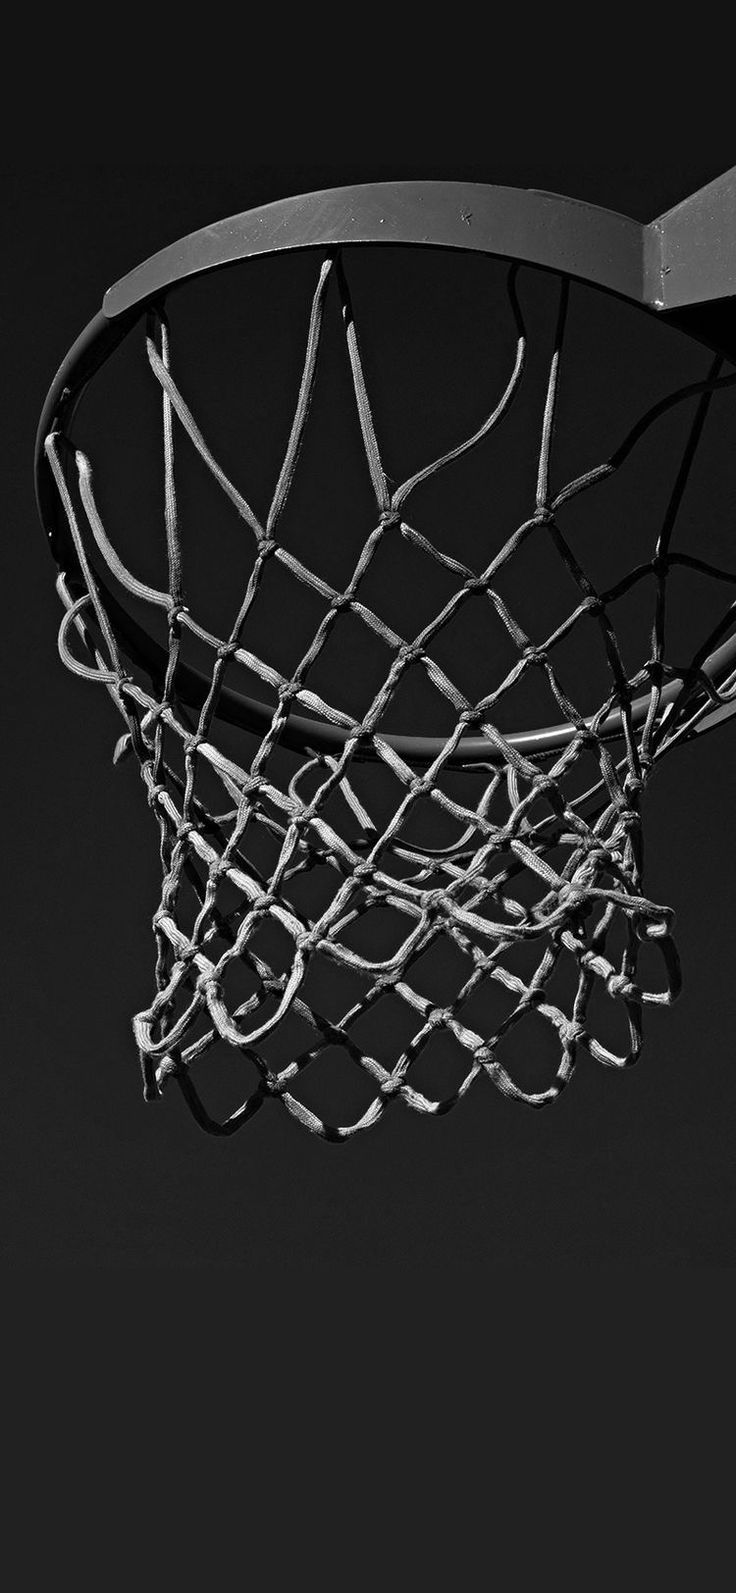 Basketball. Cool basketball wallpaper, Black and white aesthetic, Basketball. Nike wallpaper, Cool basketball wallpaper, Basketball background